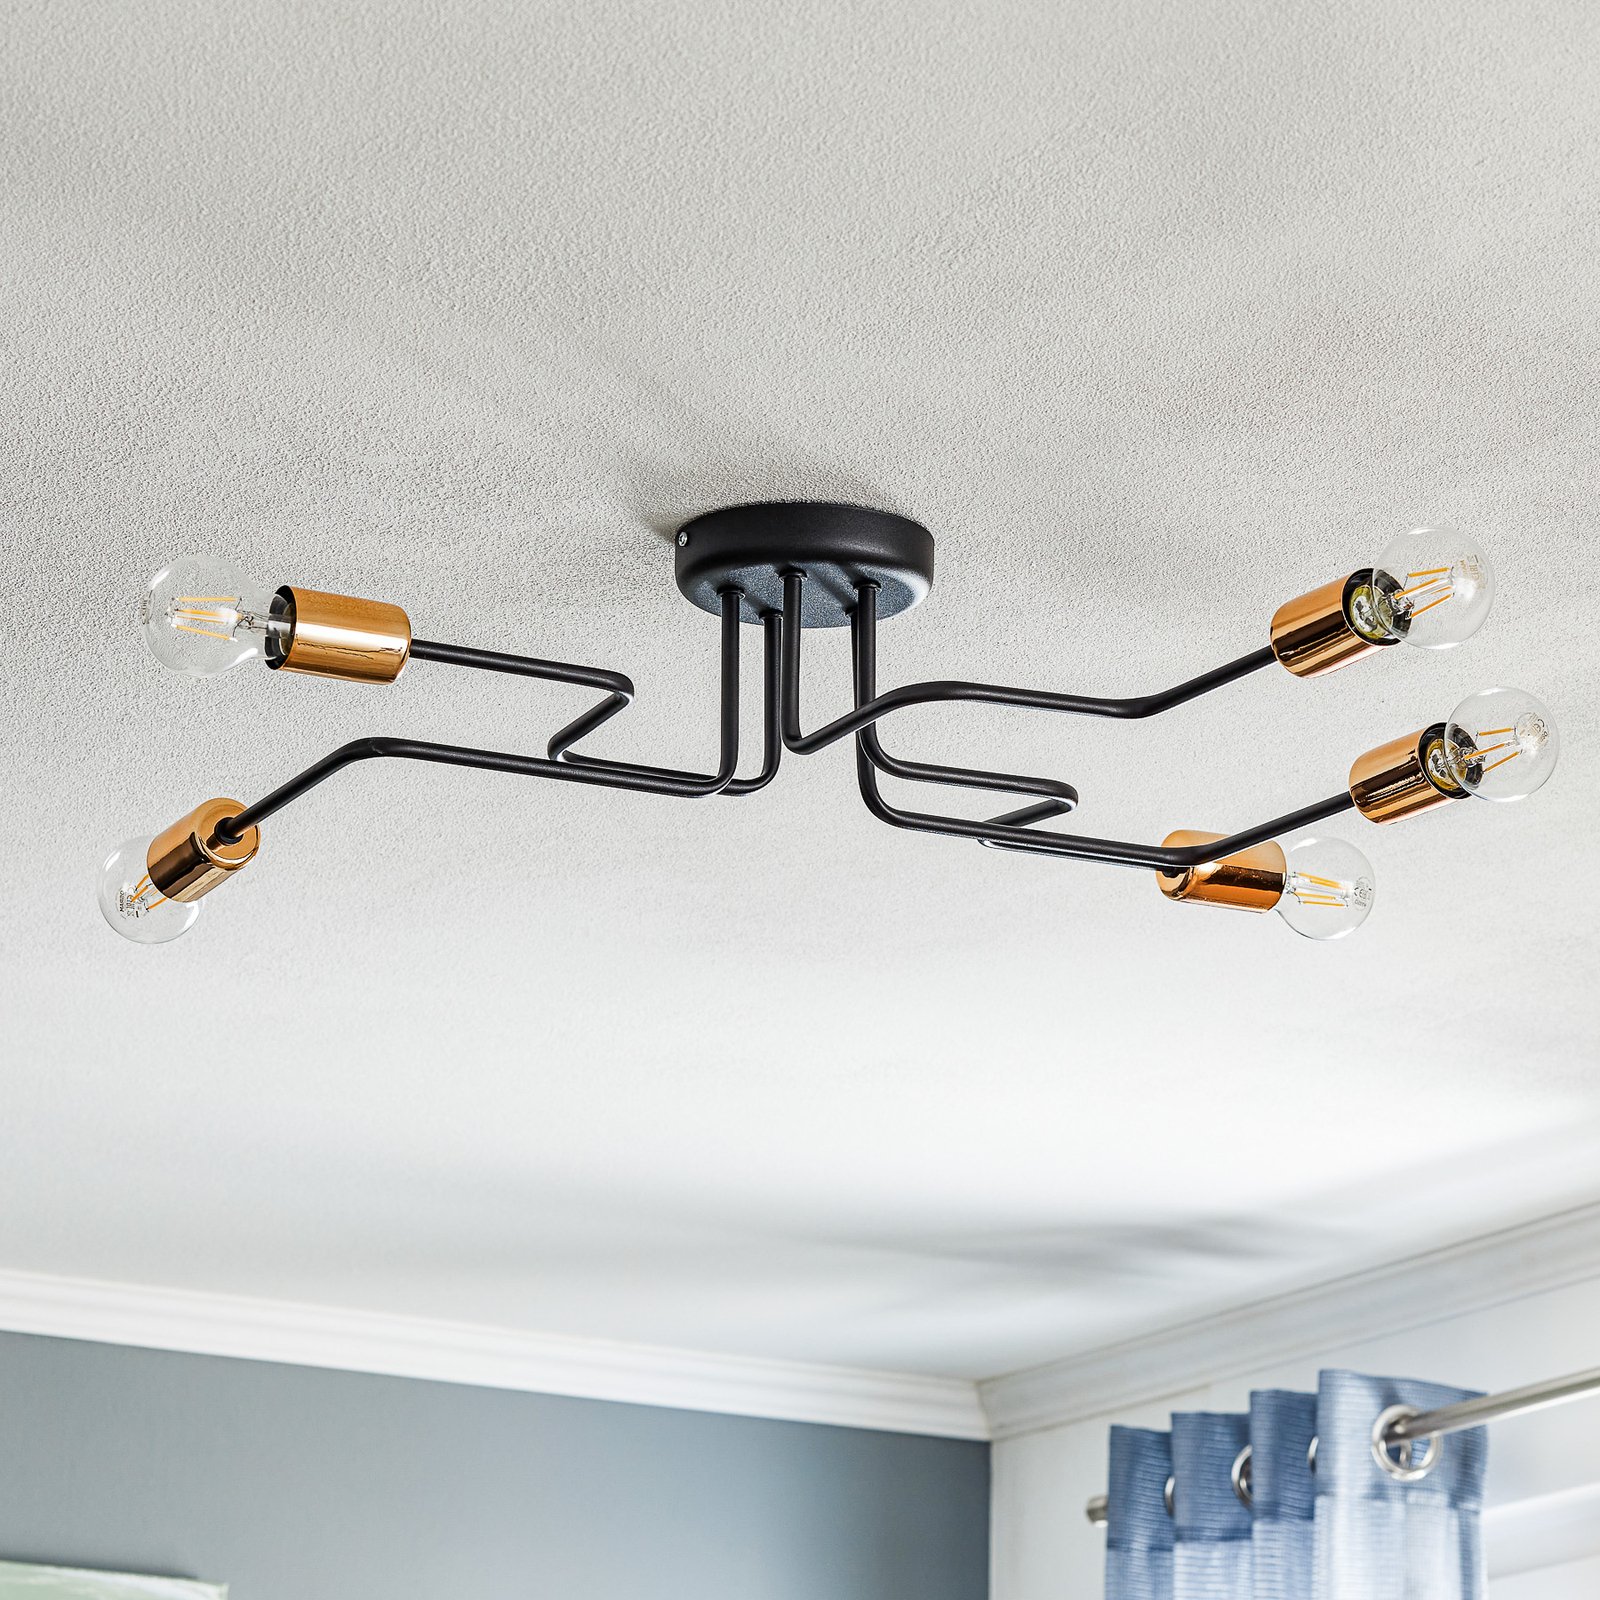 Tubes ceiling light 5-bulb black/copper